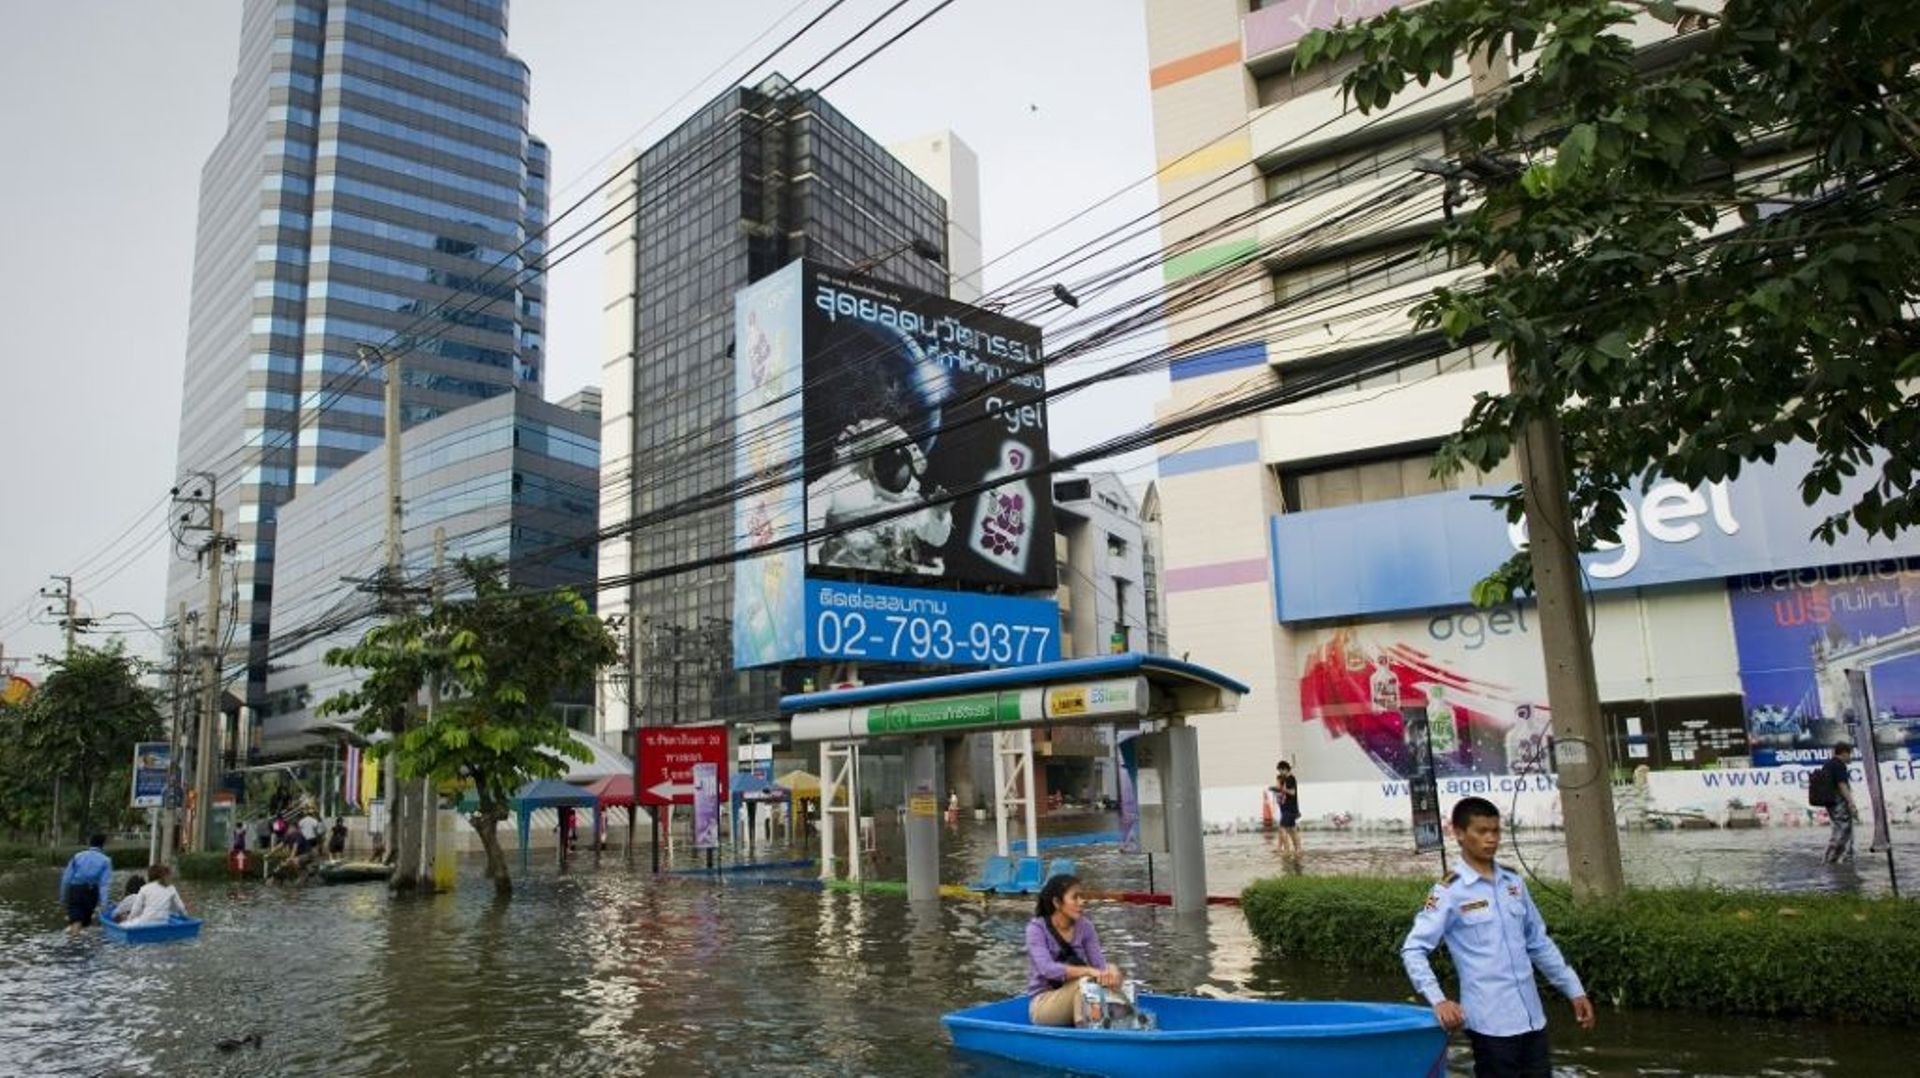 Une femme circule en barque dans une rue de Bangkok le 9 novembre 2011 lors des inondations qui ont submergé une partie de la ville.